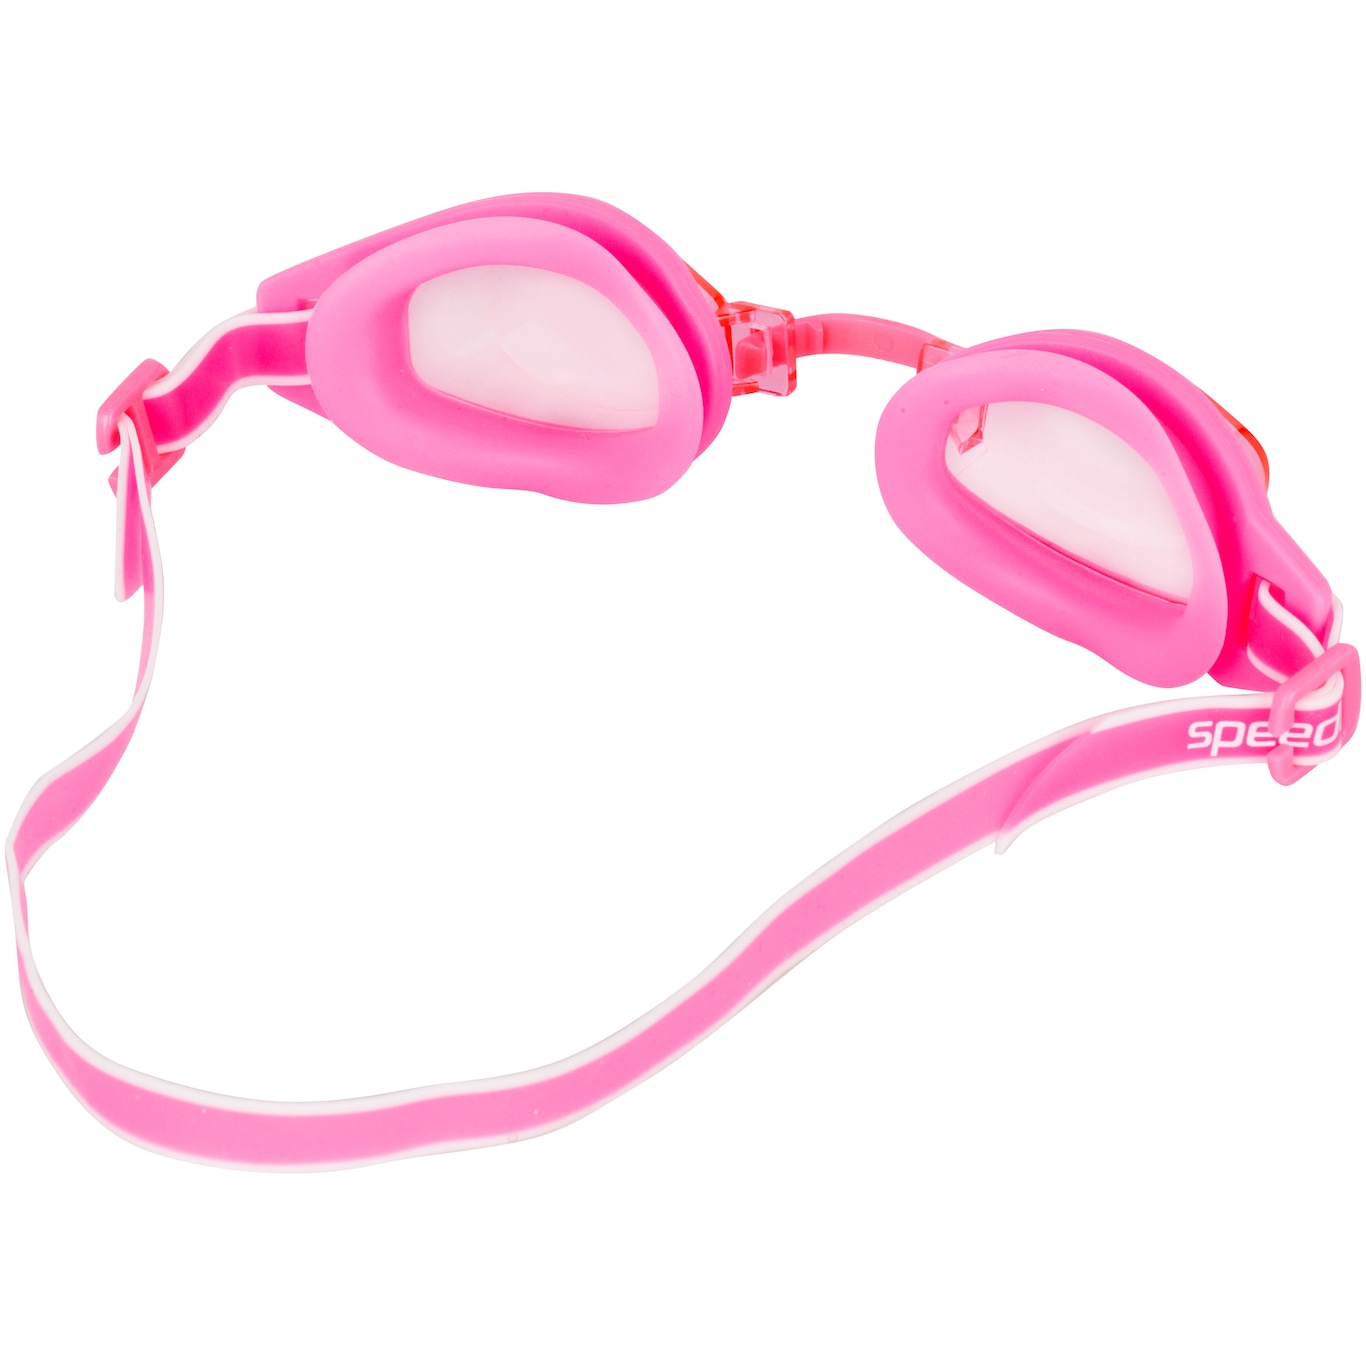 Kit de Natação Speedo Swim com Óculos + Touca + Protetor de Ouvido - Adulto - Foto 3